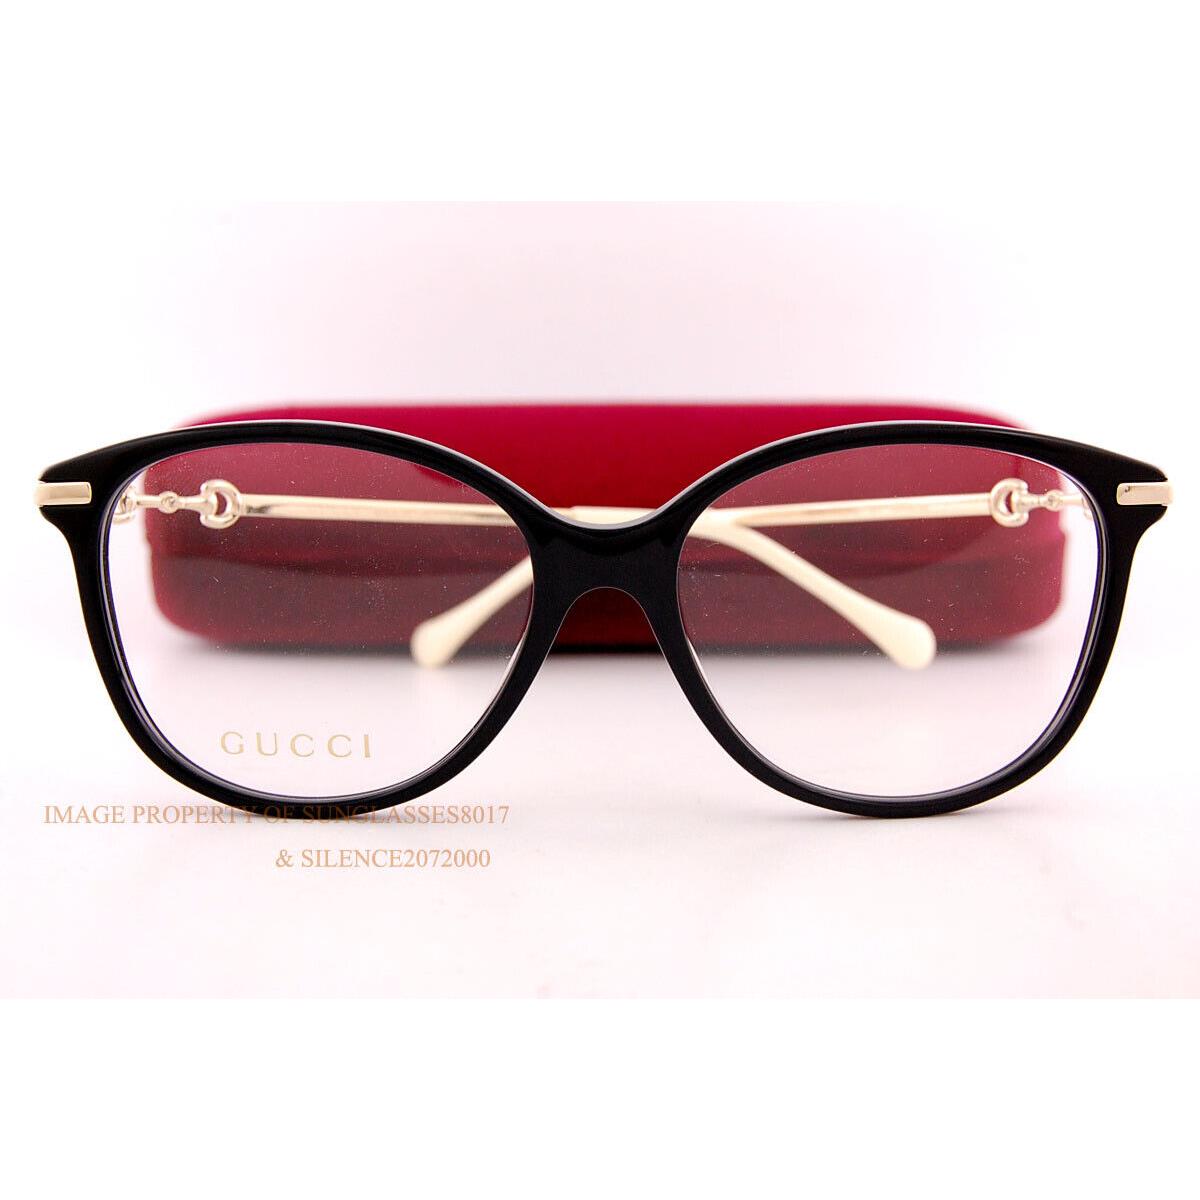 Gucci eyeglasses  - Frame: Black, Lens: 0